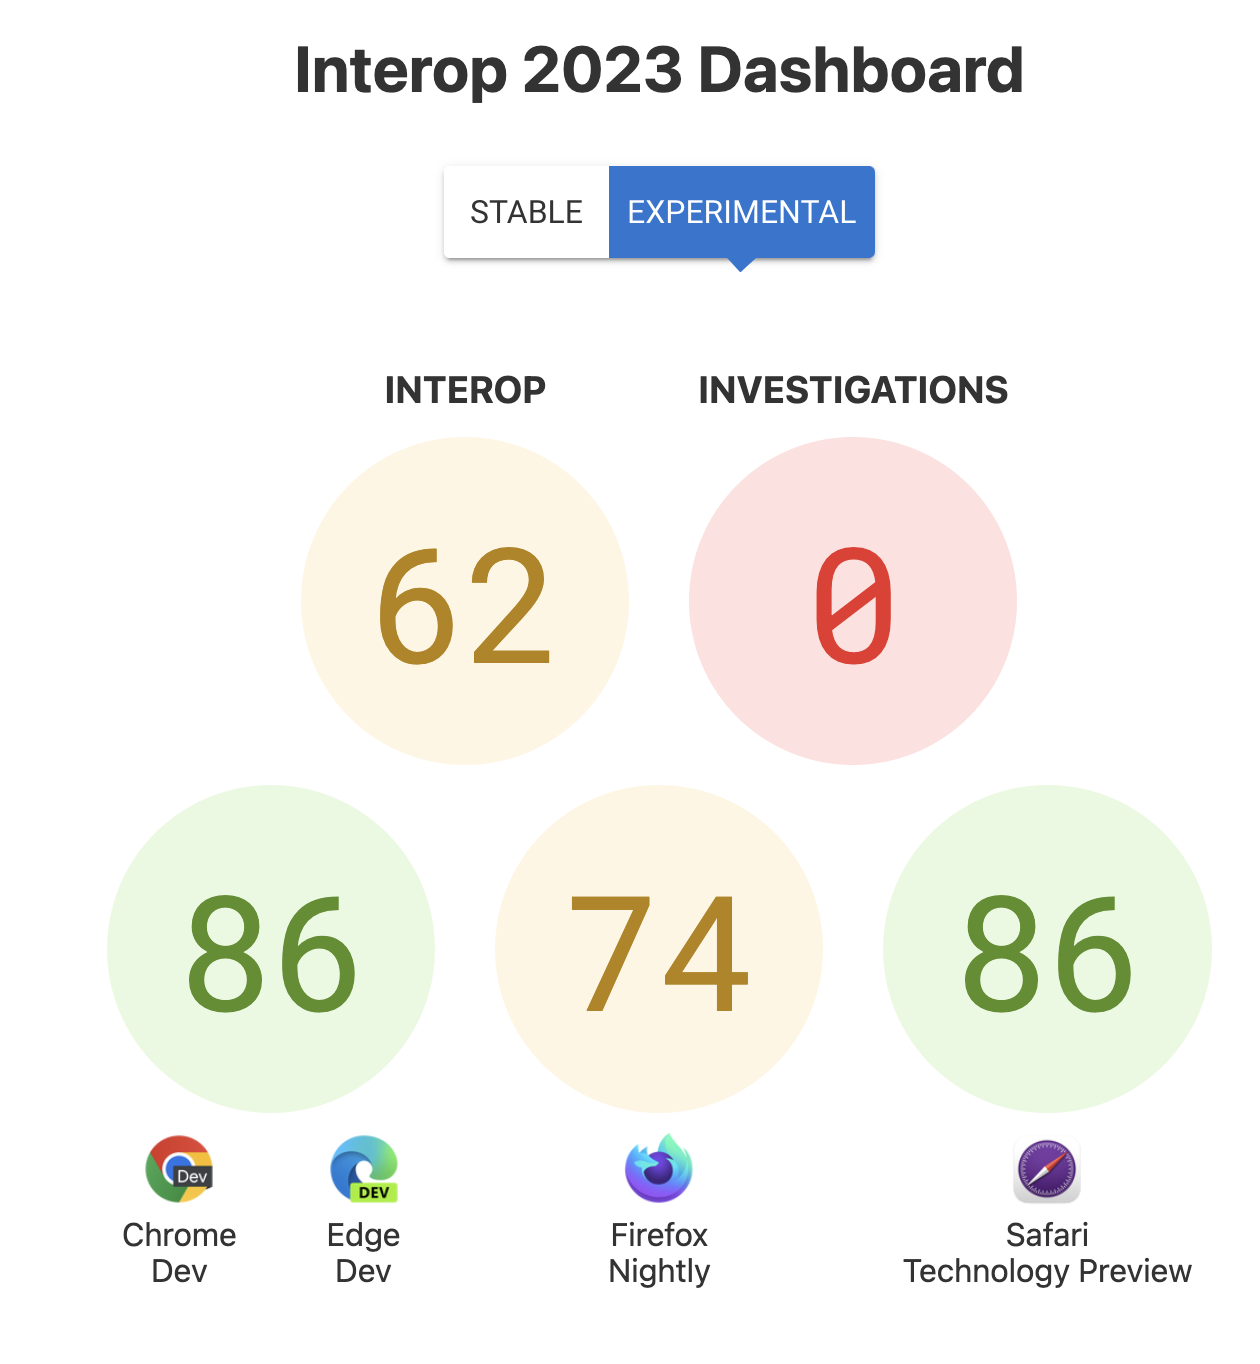 Die Werte für Interop insgesamt: 62, Investigations: 0 und die Punktzahlen pro Browser: 86 für Chrome und Edge, 74 für Firefox und 86 für die Safari-Technologievorschau.